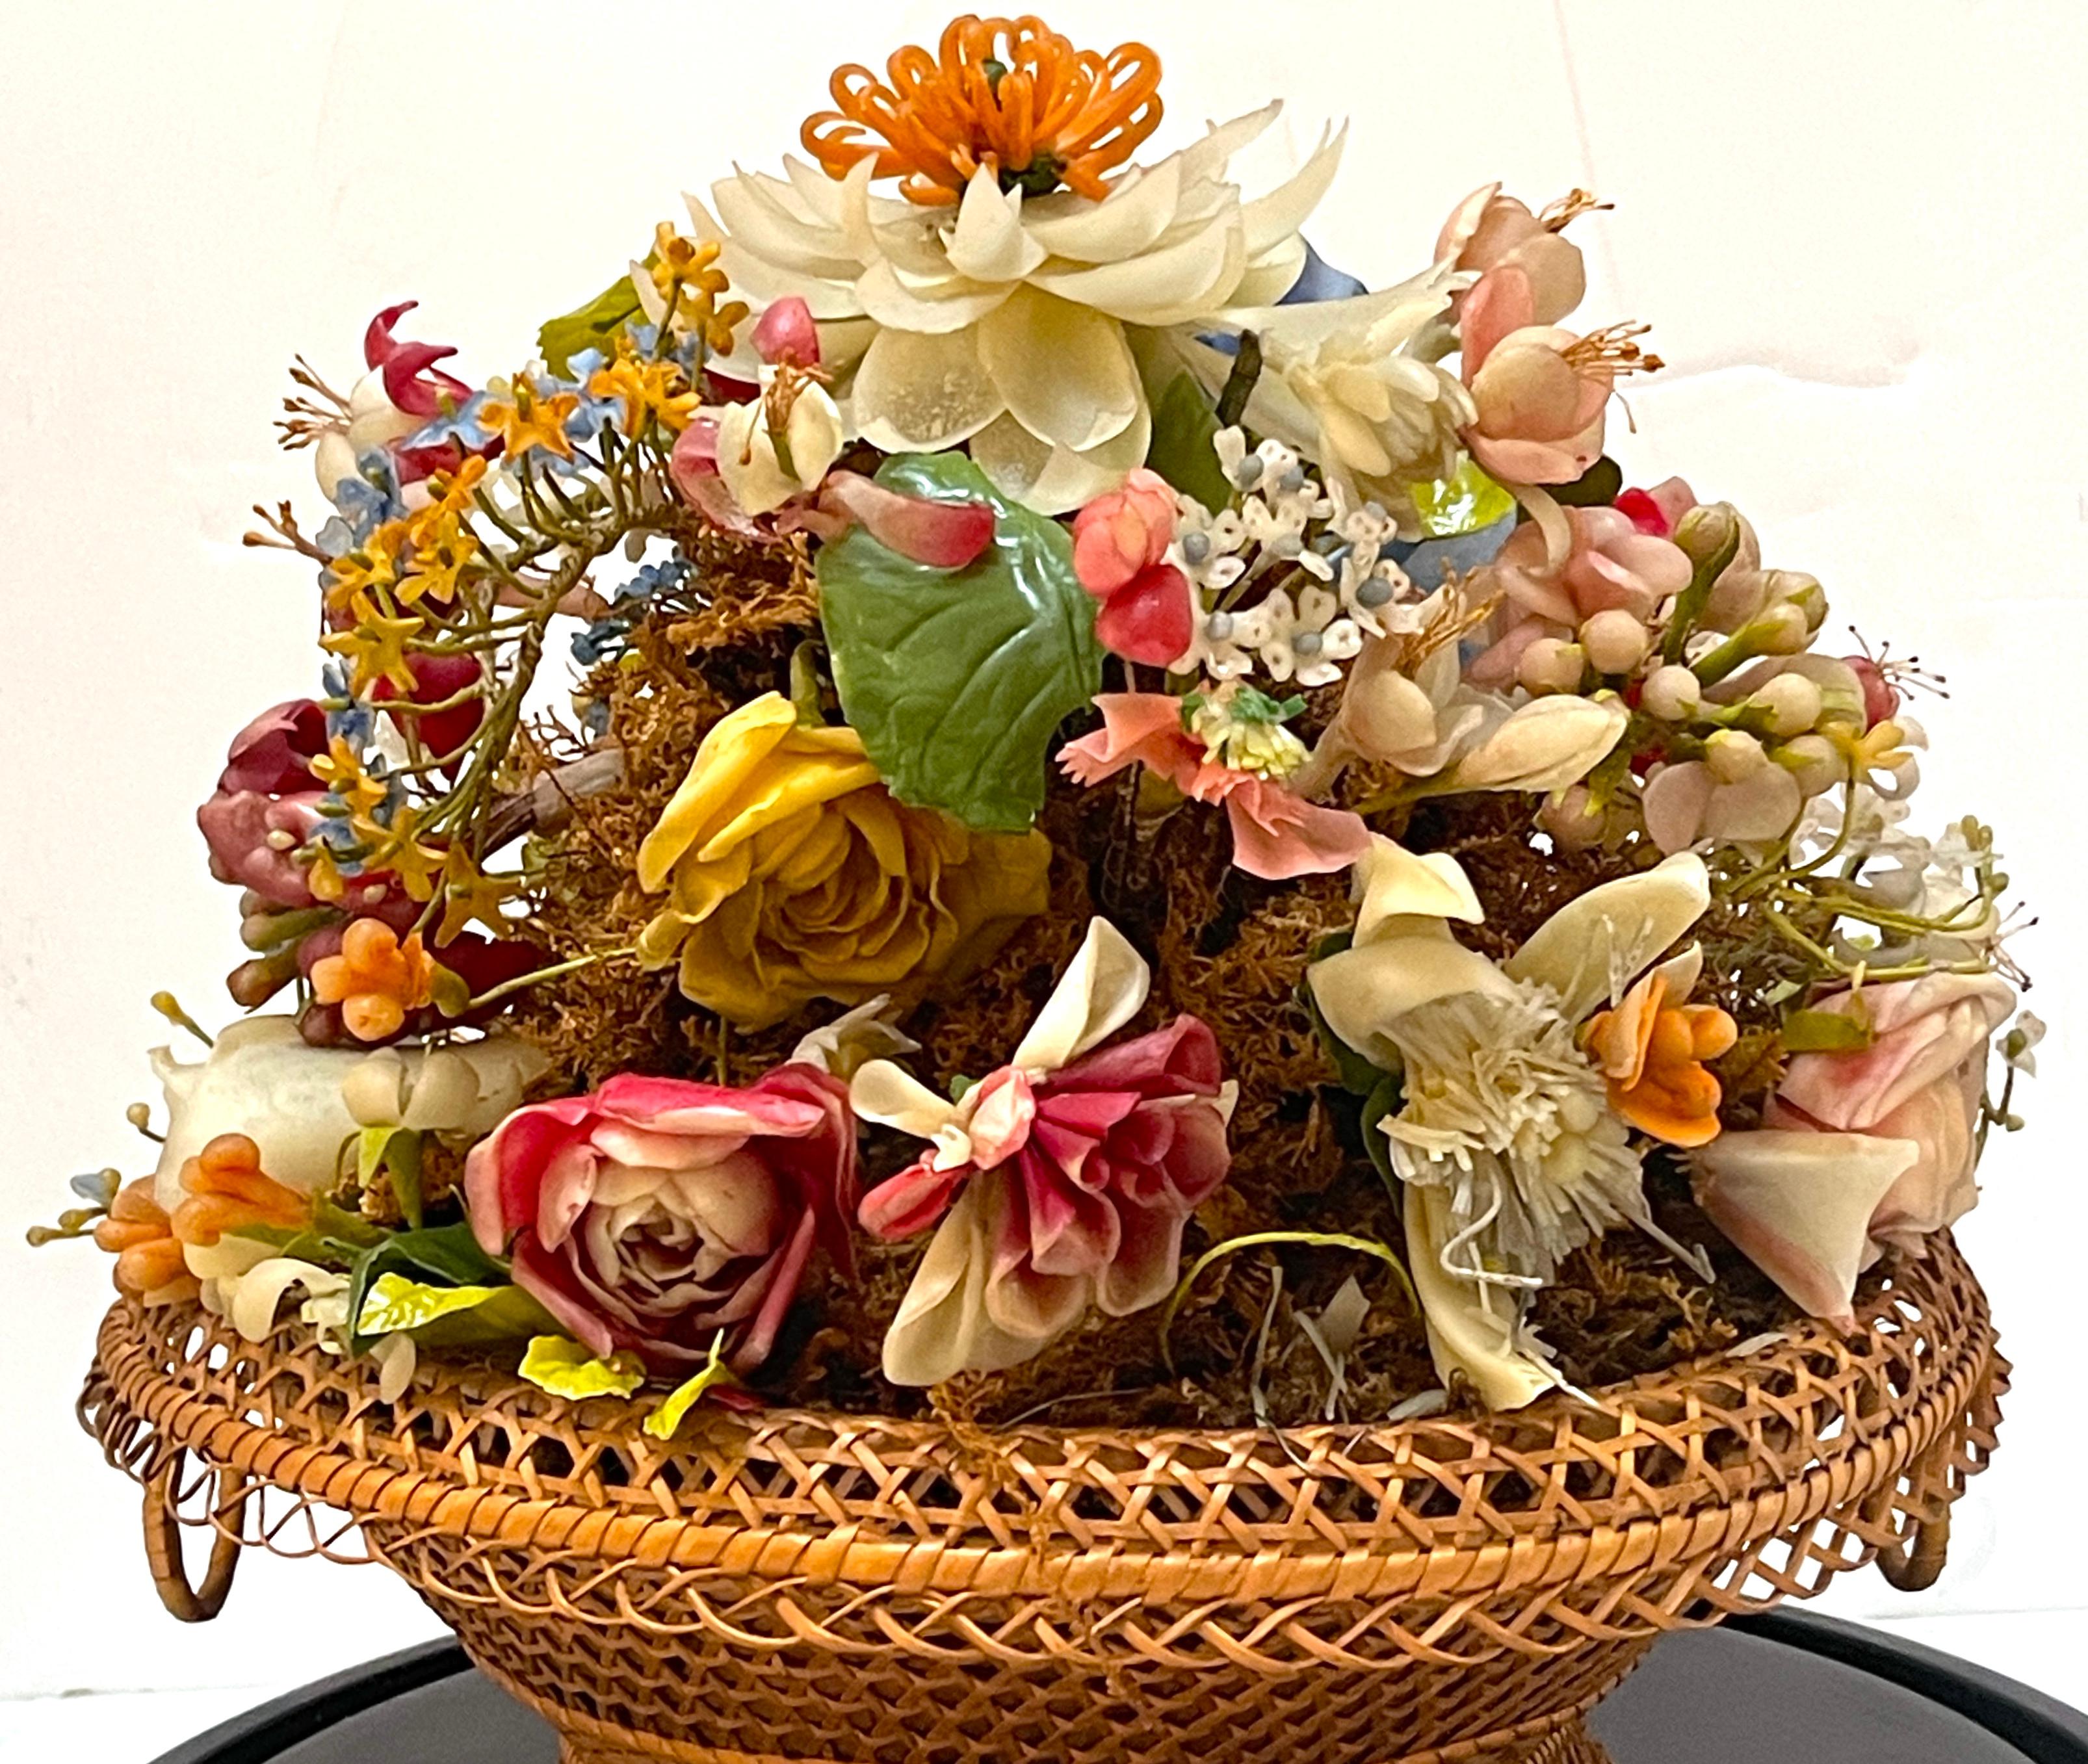 Victorian Wax Flower Still Life Basket Under Round Glass Dome For Sale 1